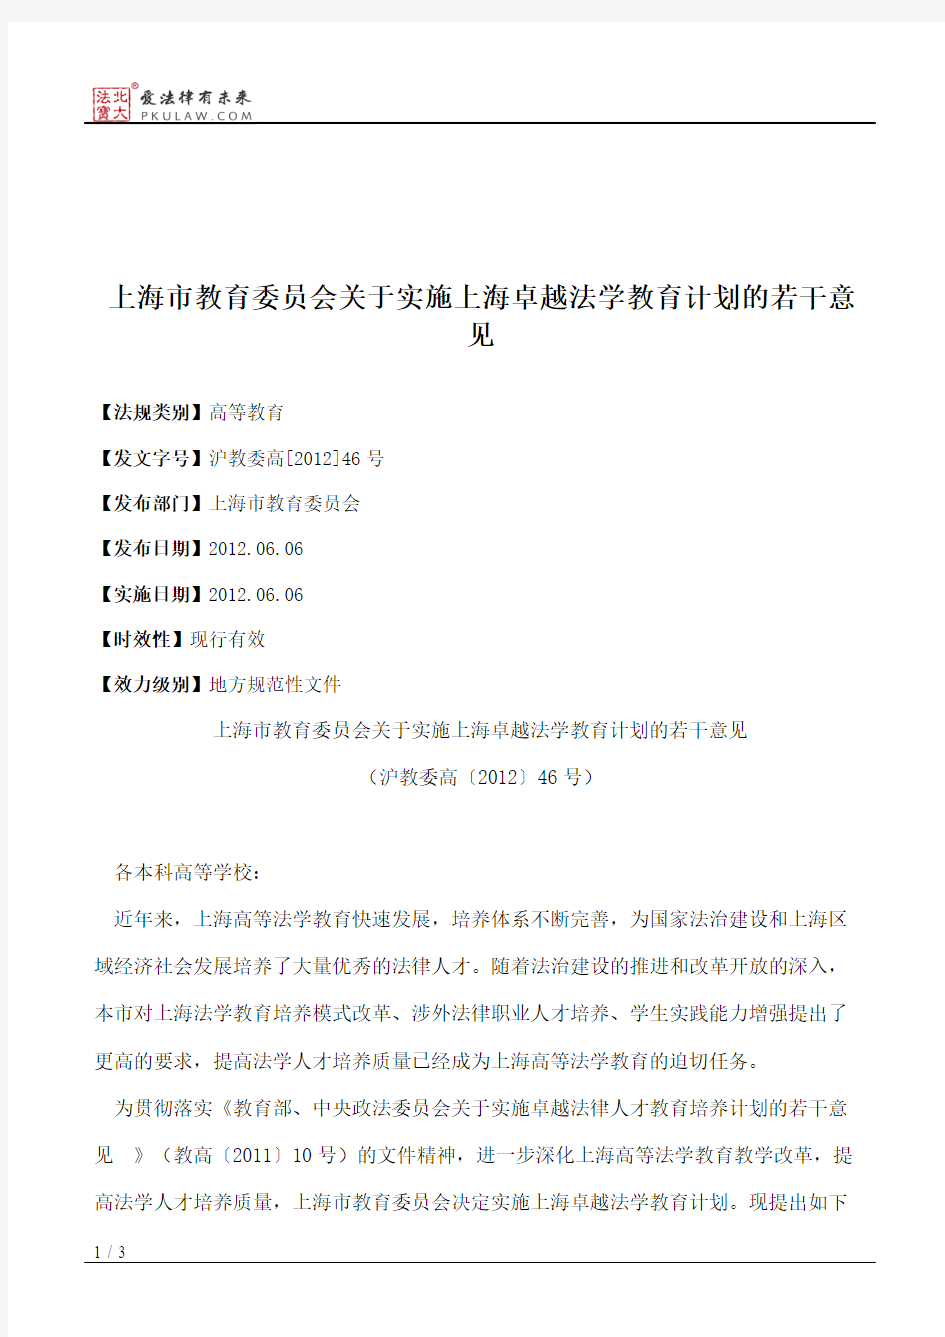 上海市教育委员会关于实施上海卓越法学教育计划的若干意见